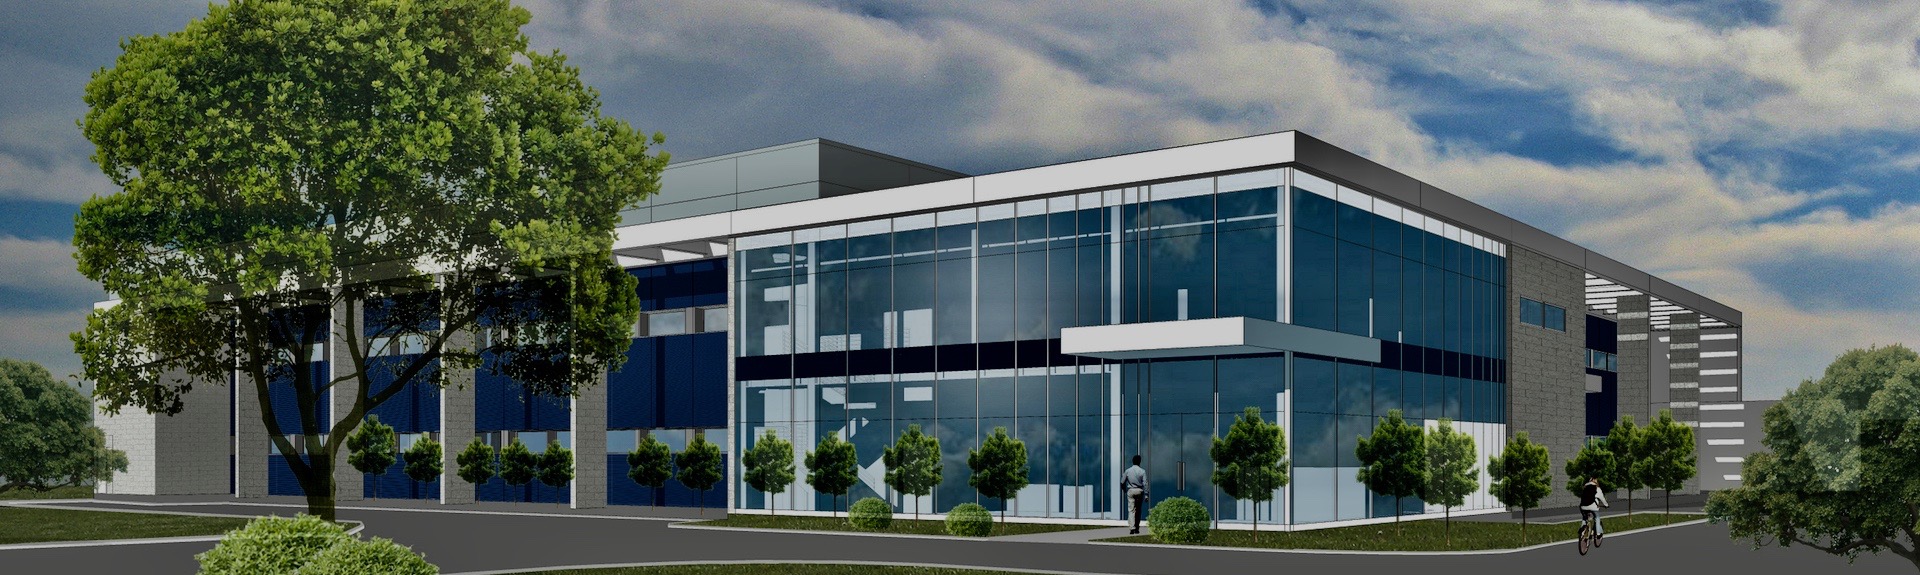 Maquette de la nouvelle usine du Centre international de développement pharmaceutique, Saint-Hyacinthe, Québec